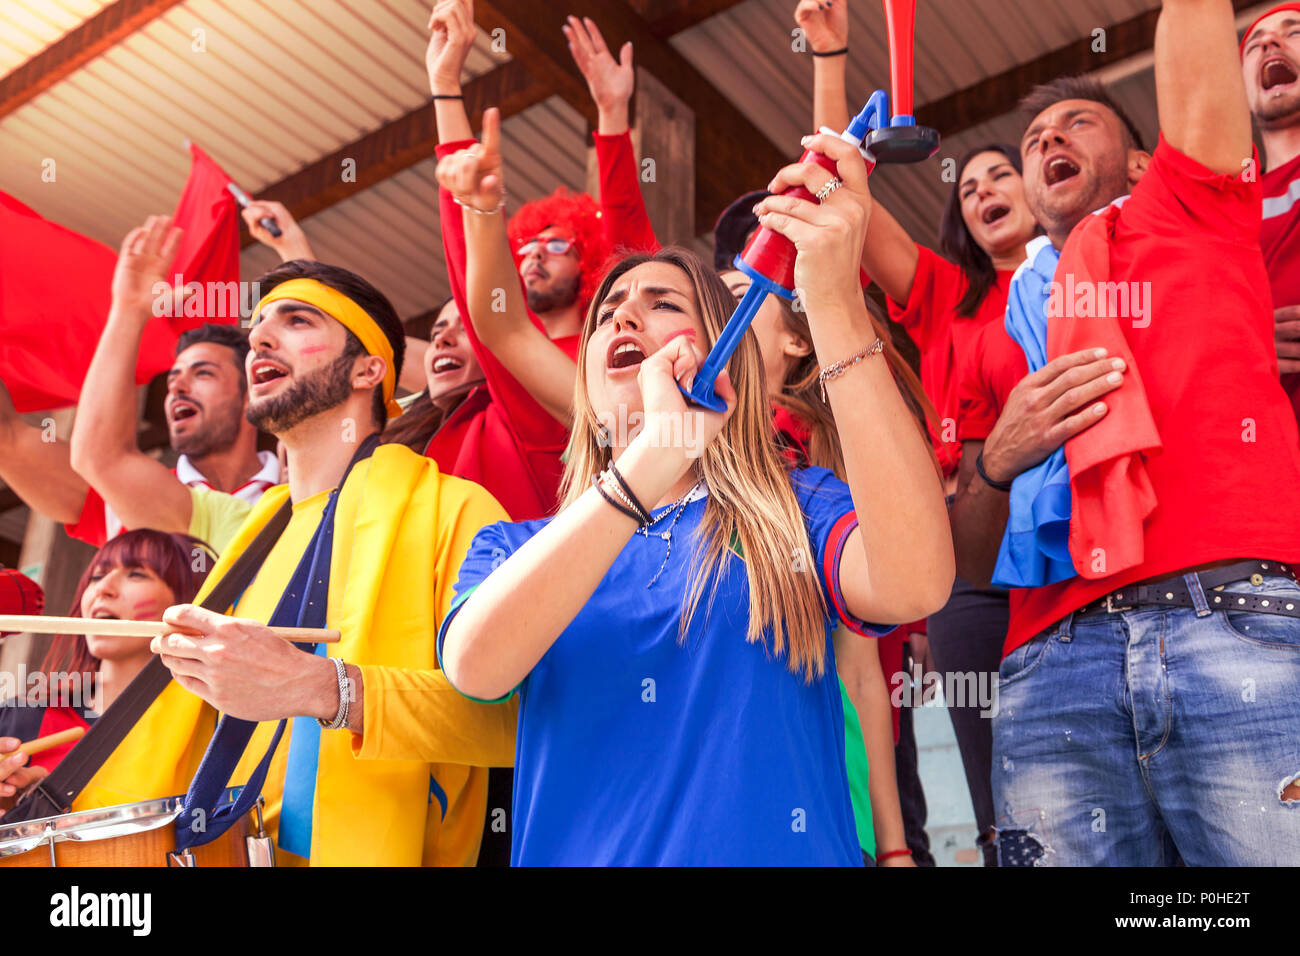 Grupo de aficionados vestidos de diversos colores viendo un evento deportivo en las gradas de un estadio Foto de stock